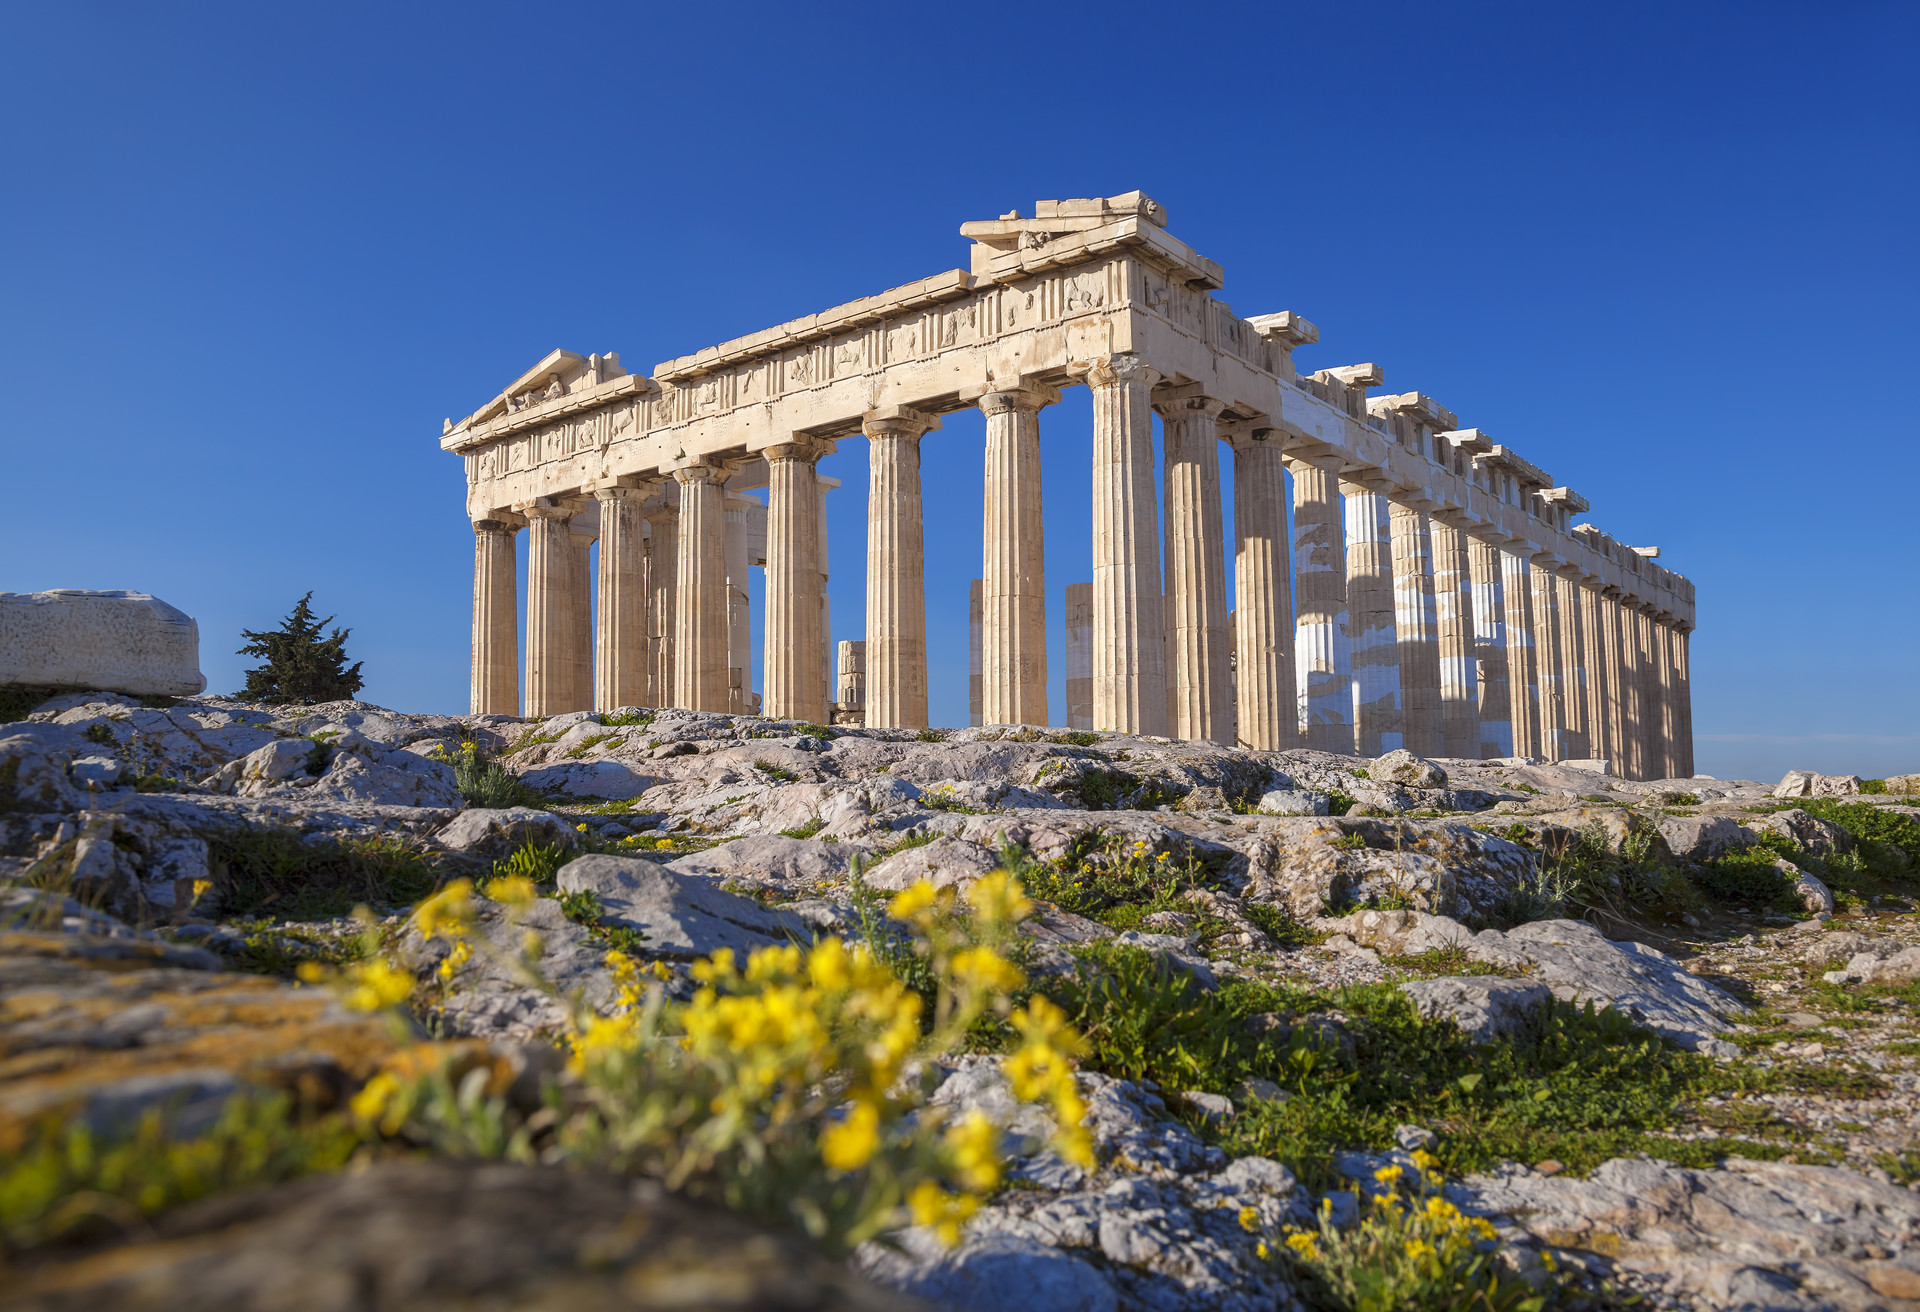 Het Parthenon in Athene is wellicht het meest beroemde voorbeeld van klassieke Griekse architectuur